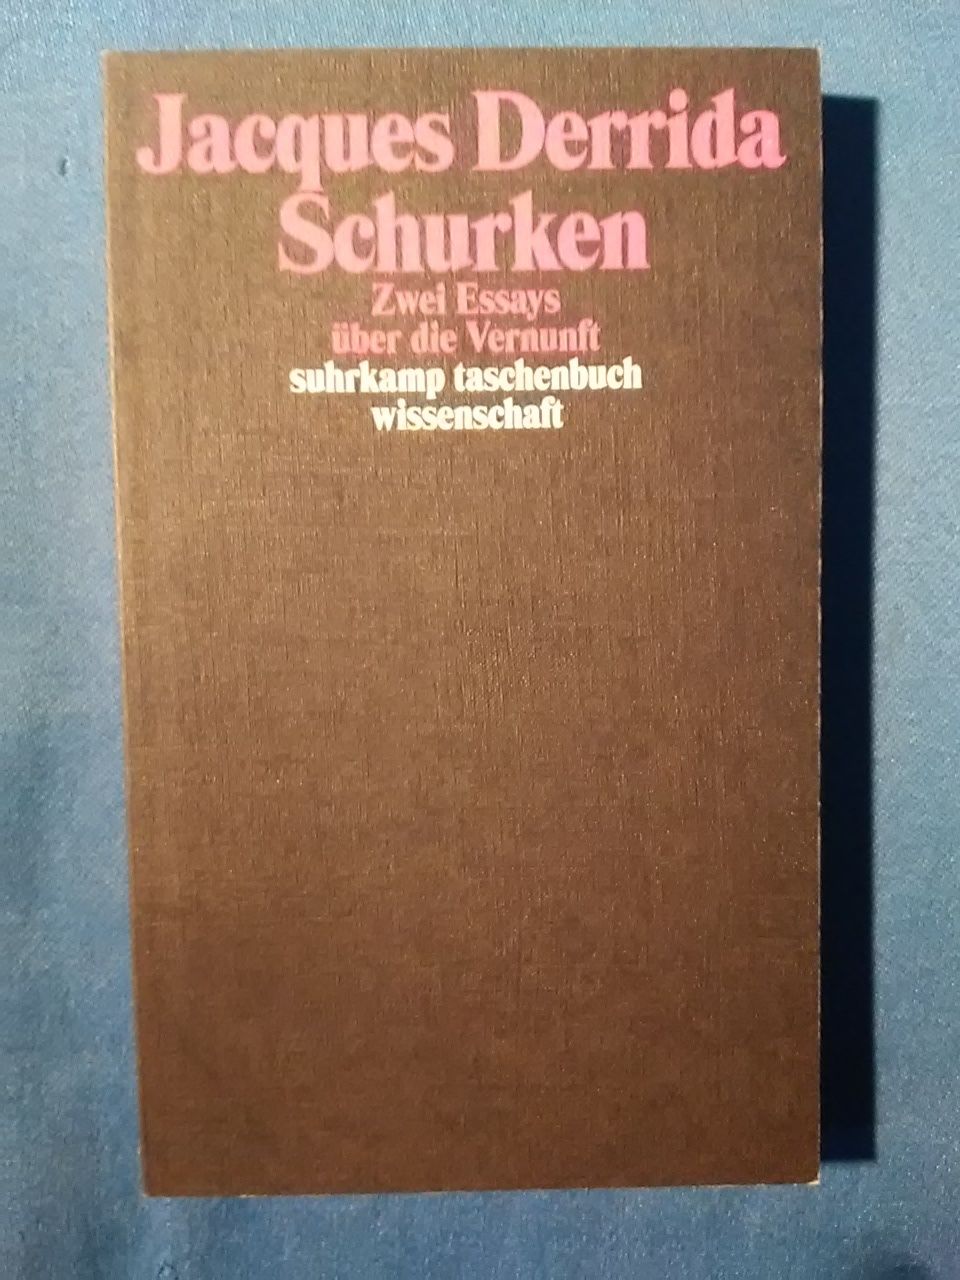 Schurken : zwei Essays über die Vernunft. Aus dem Franz. von Horst Brühmann / Suhrkamp-Taschenbuch Wissenschaft ; 1778 - Derrida, Jacques.